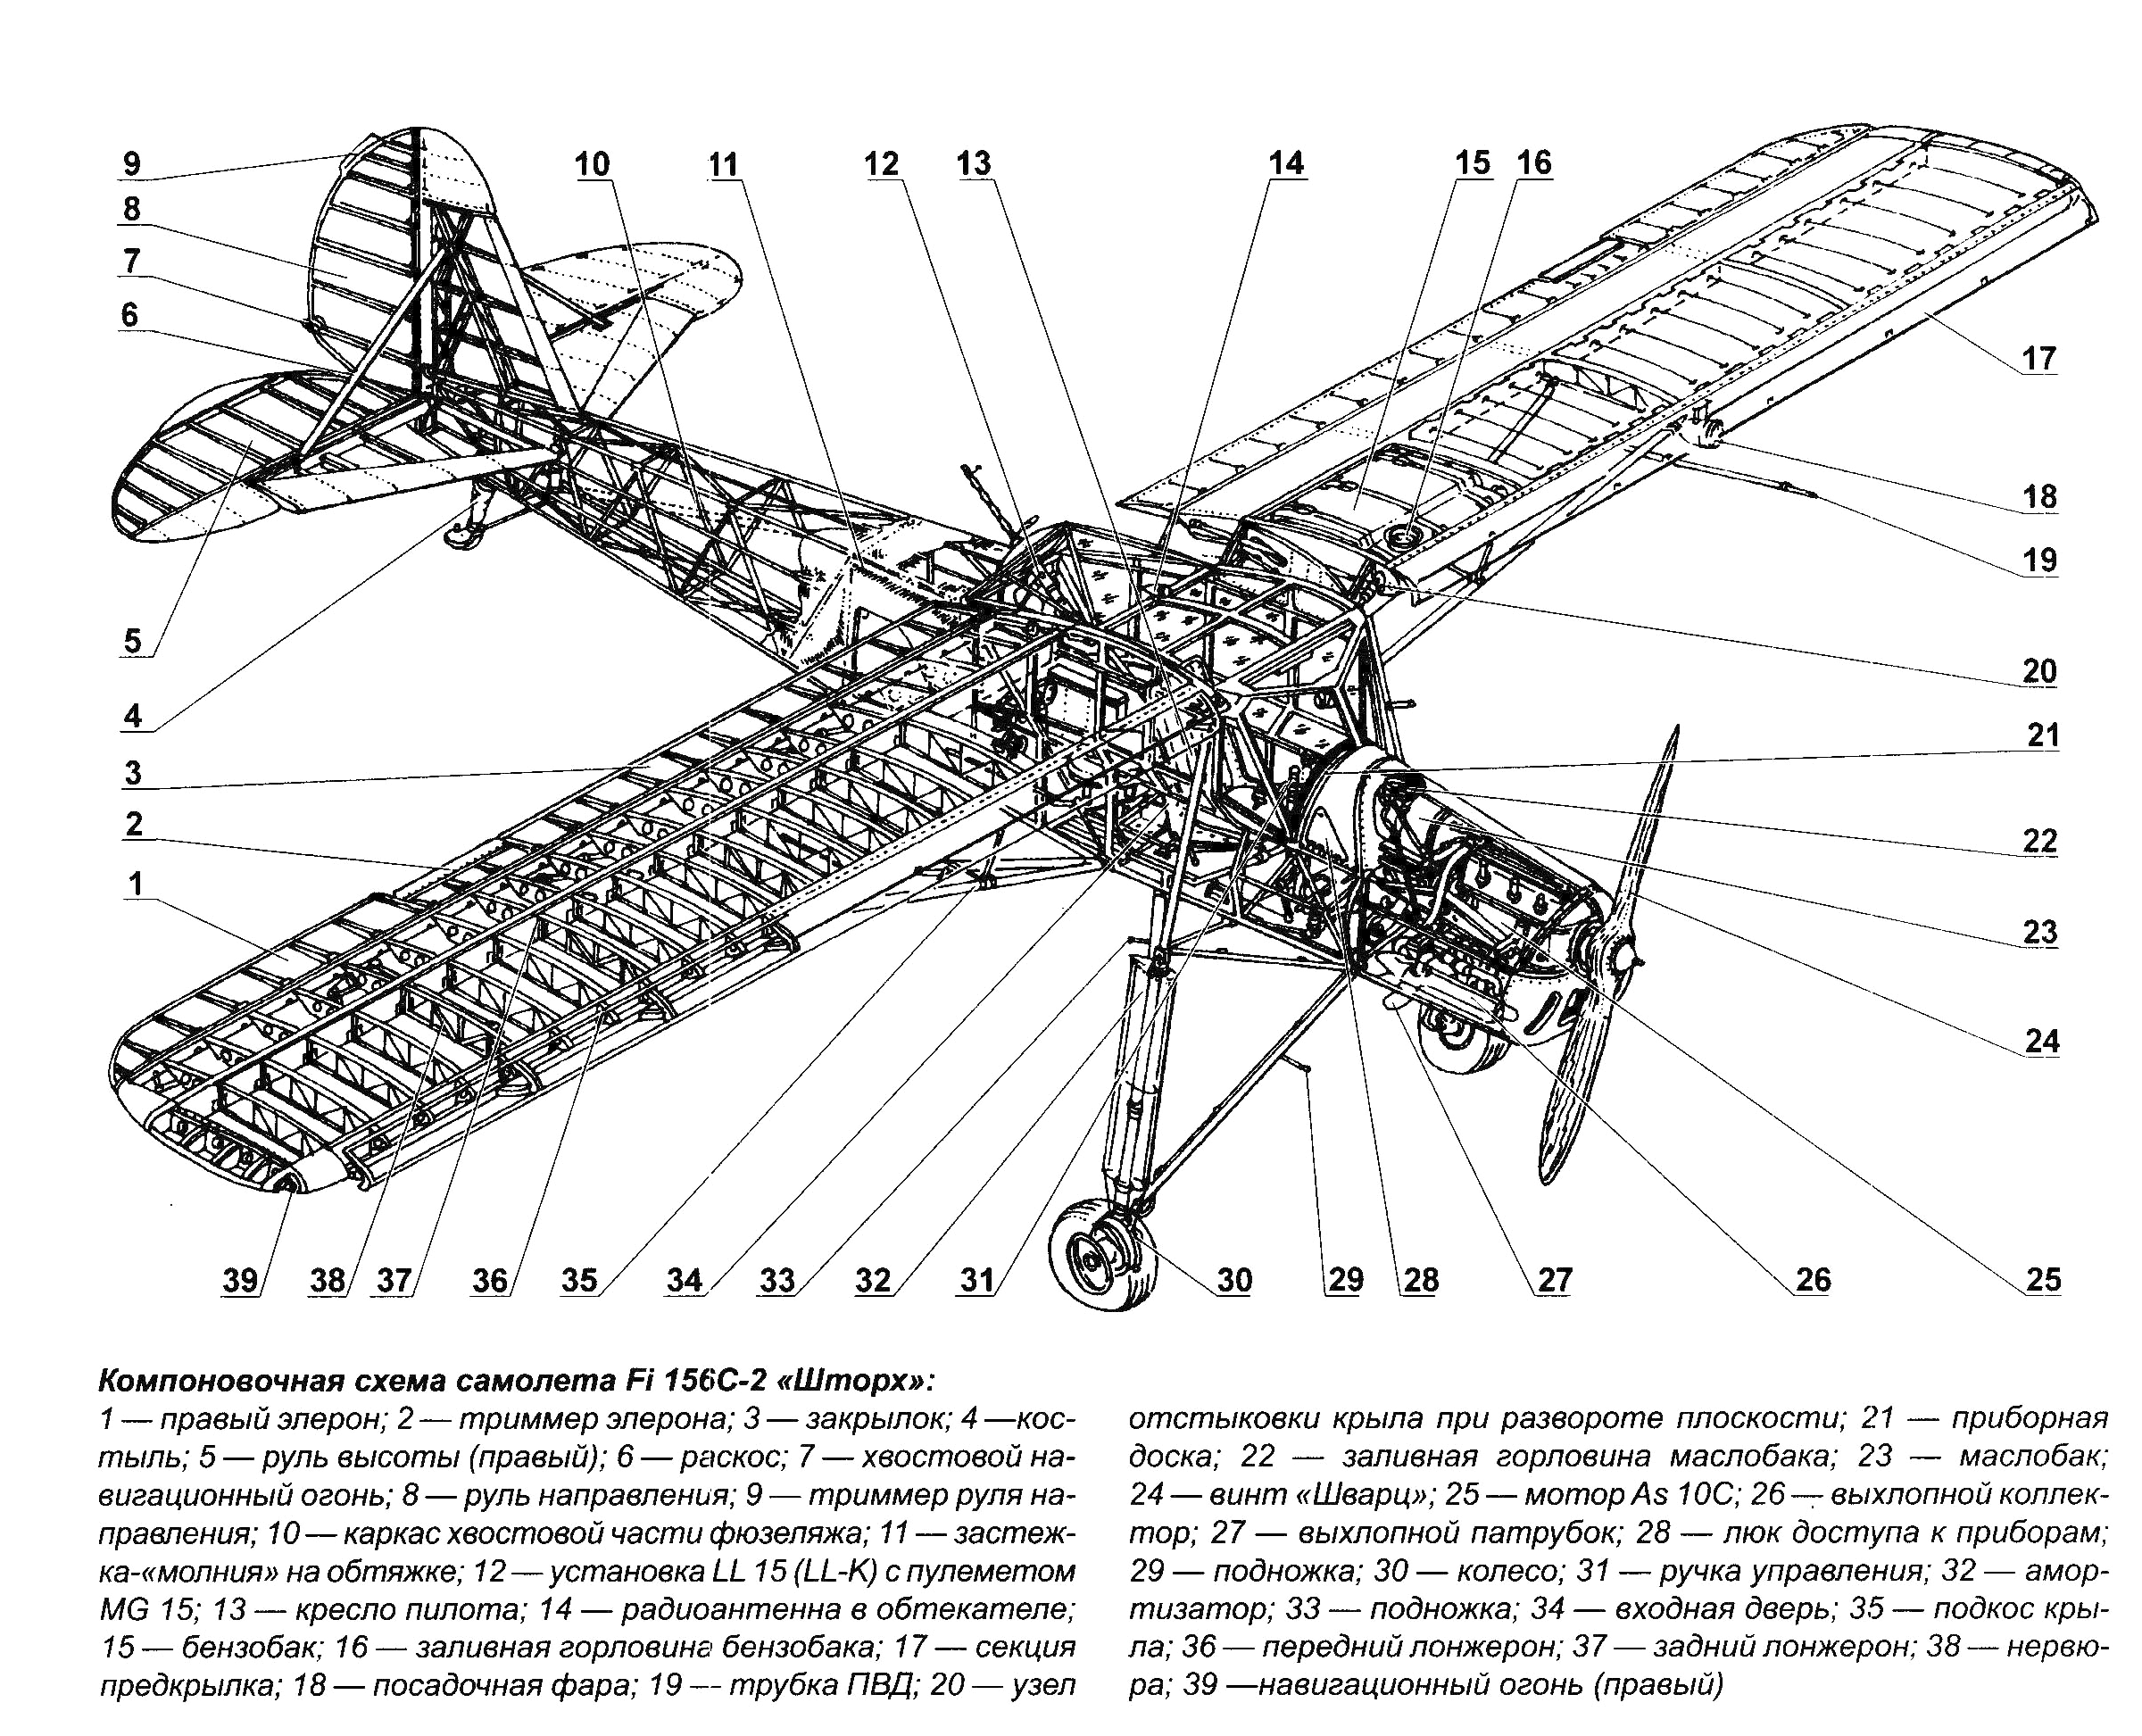 Як-12 — википедия. что такое як-12